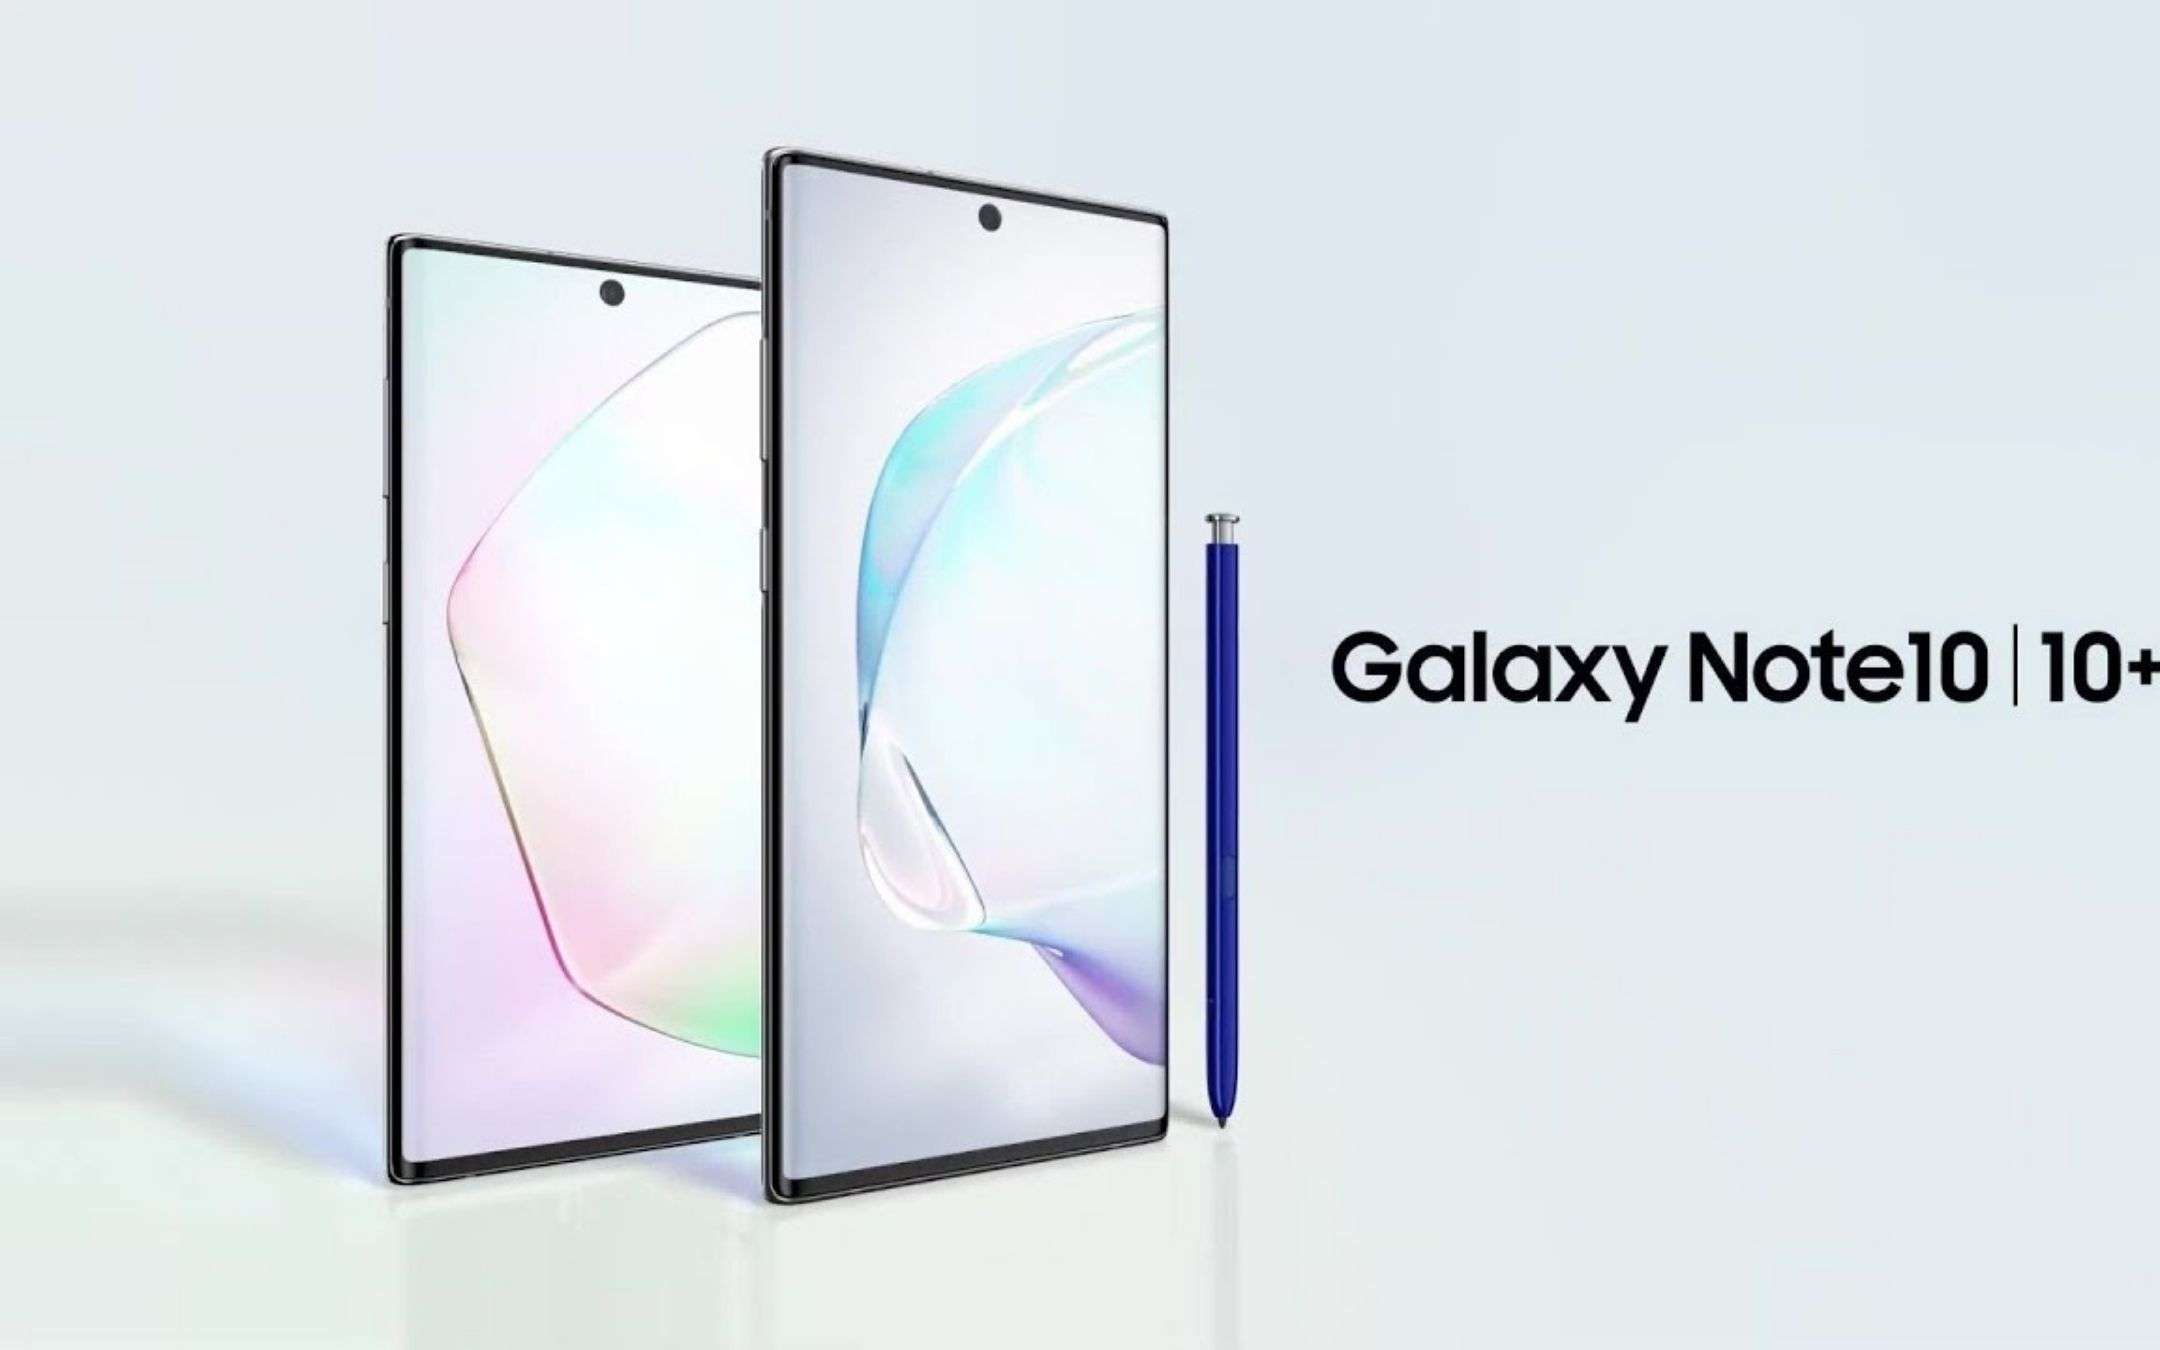 Aggiornate SUBITO i vostri Samsung Galaxy Note 10!